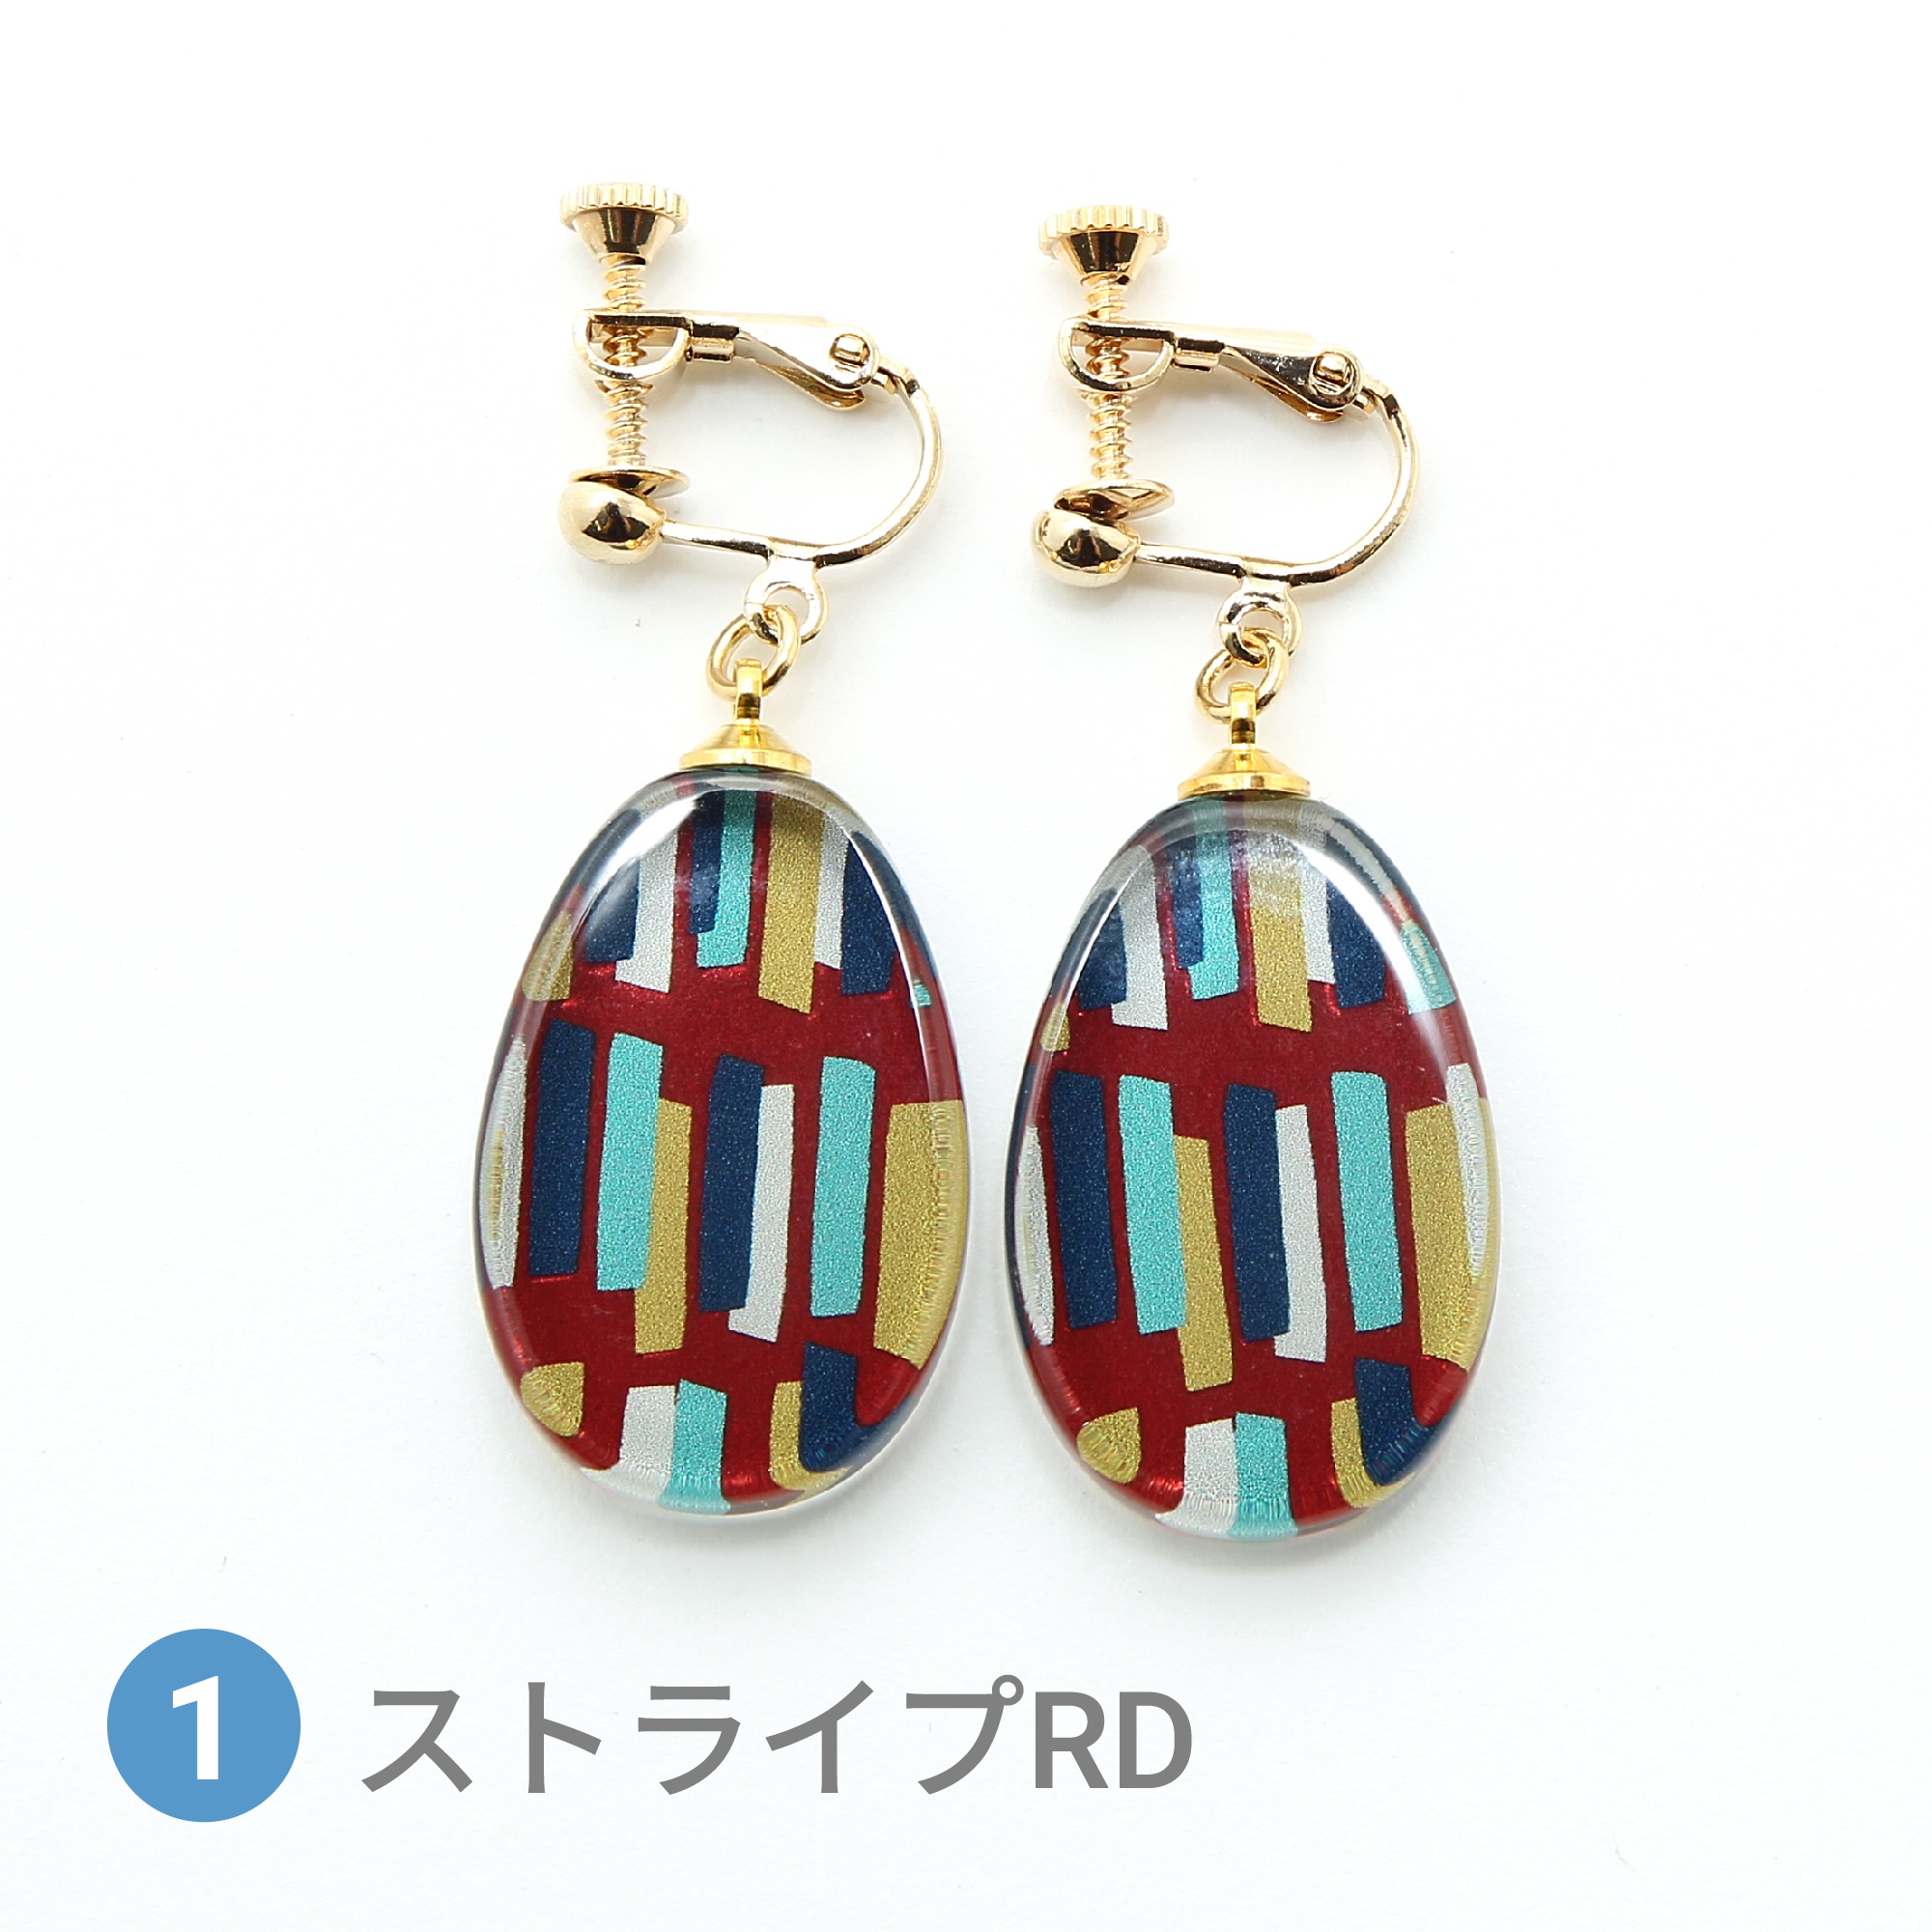 Glass accessories Earring SCANDINAVIAN stripe red drop shape